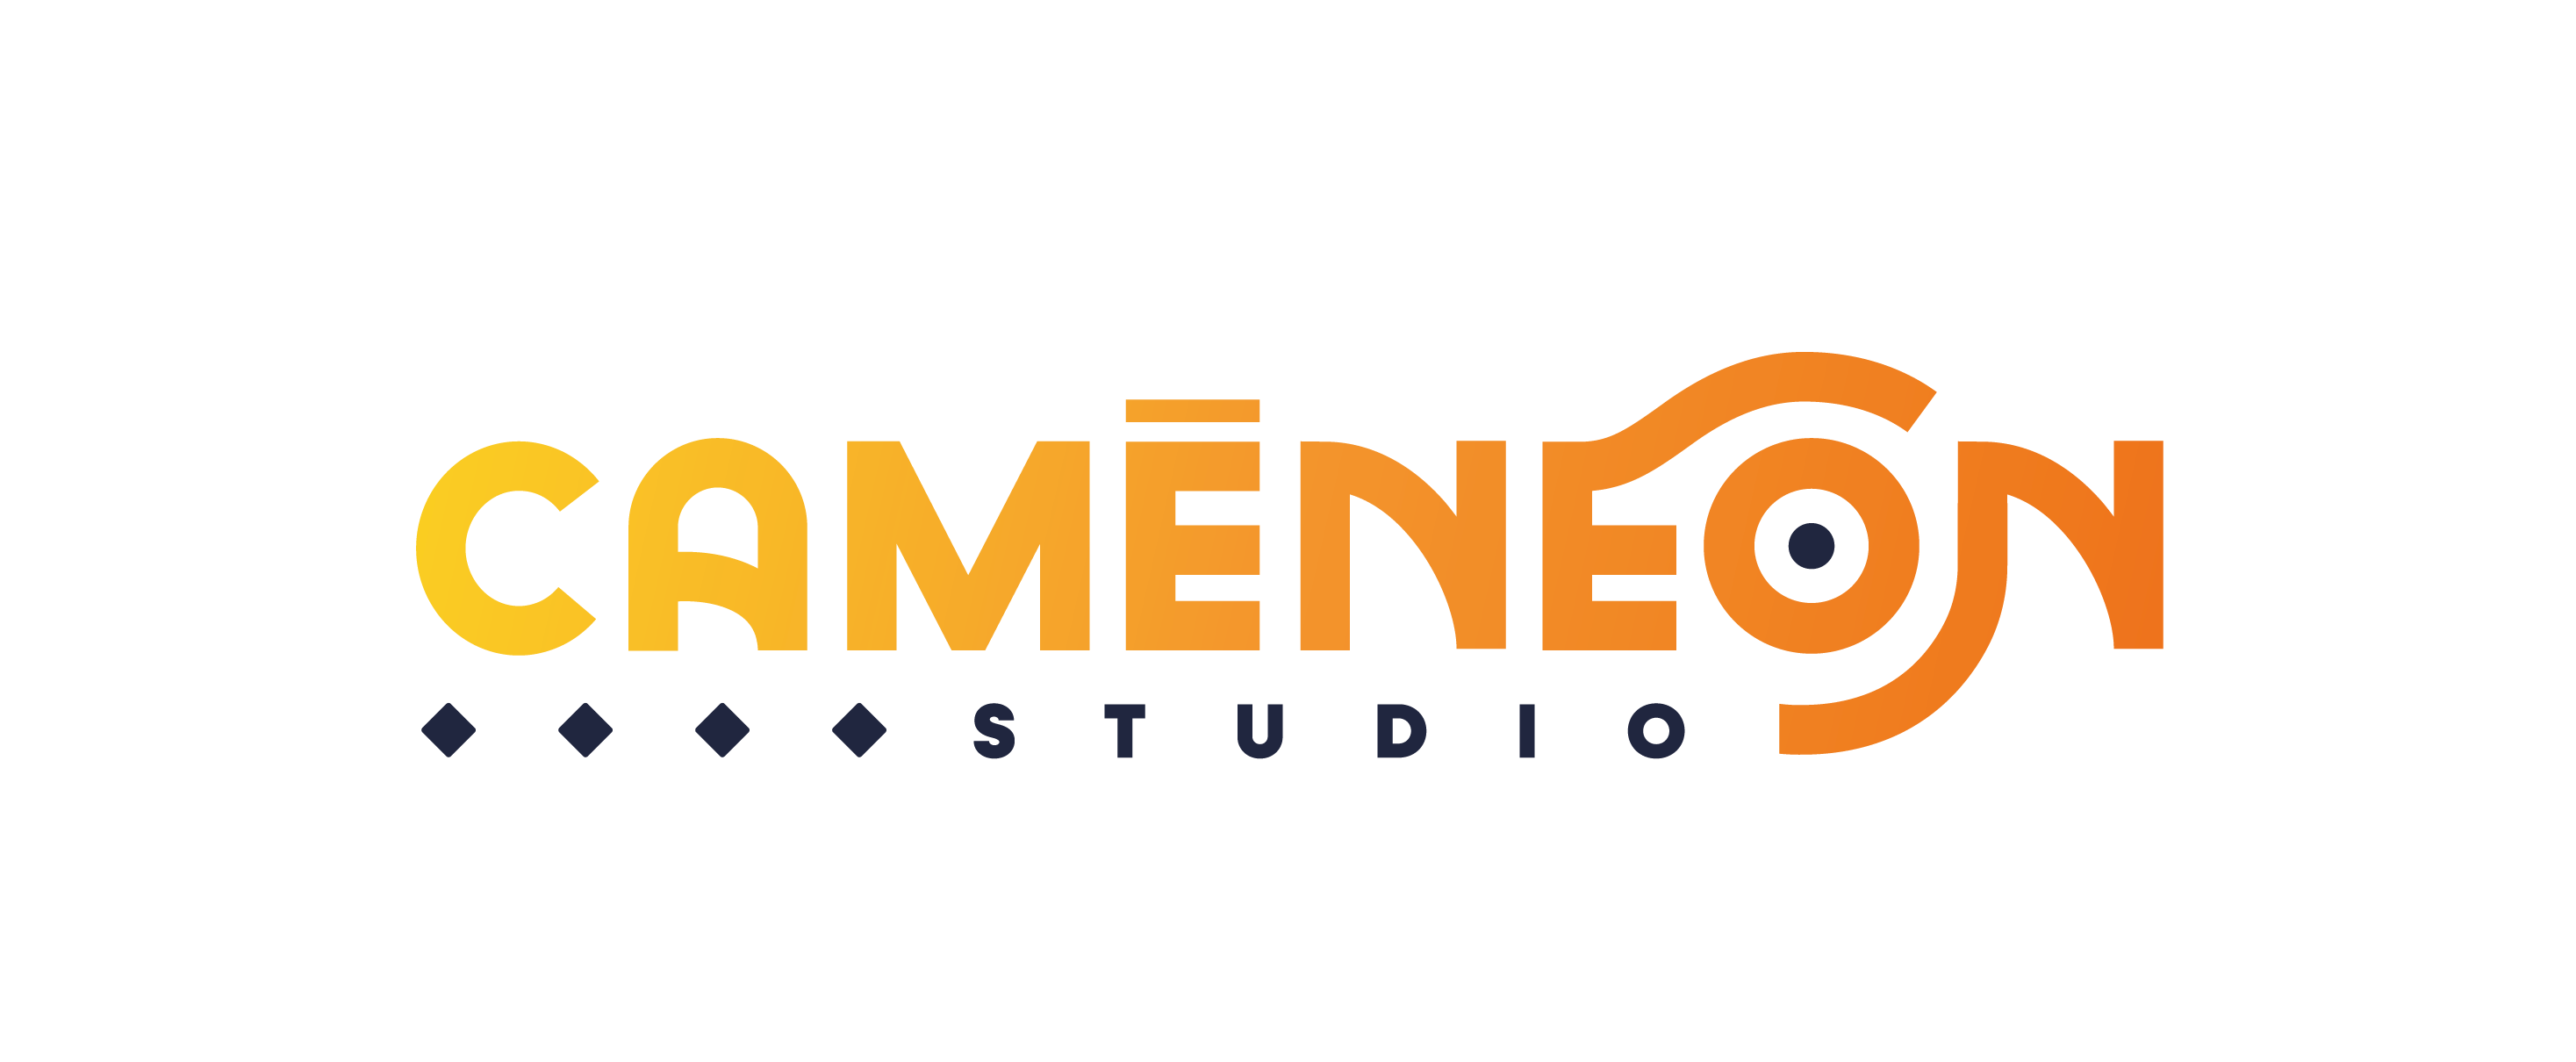 Caméneon studio